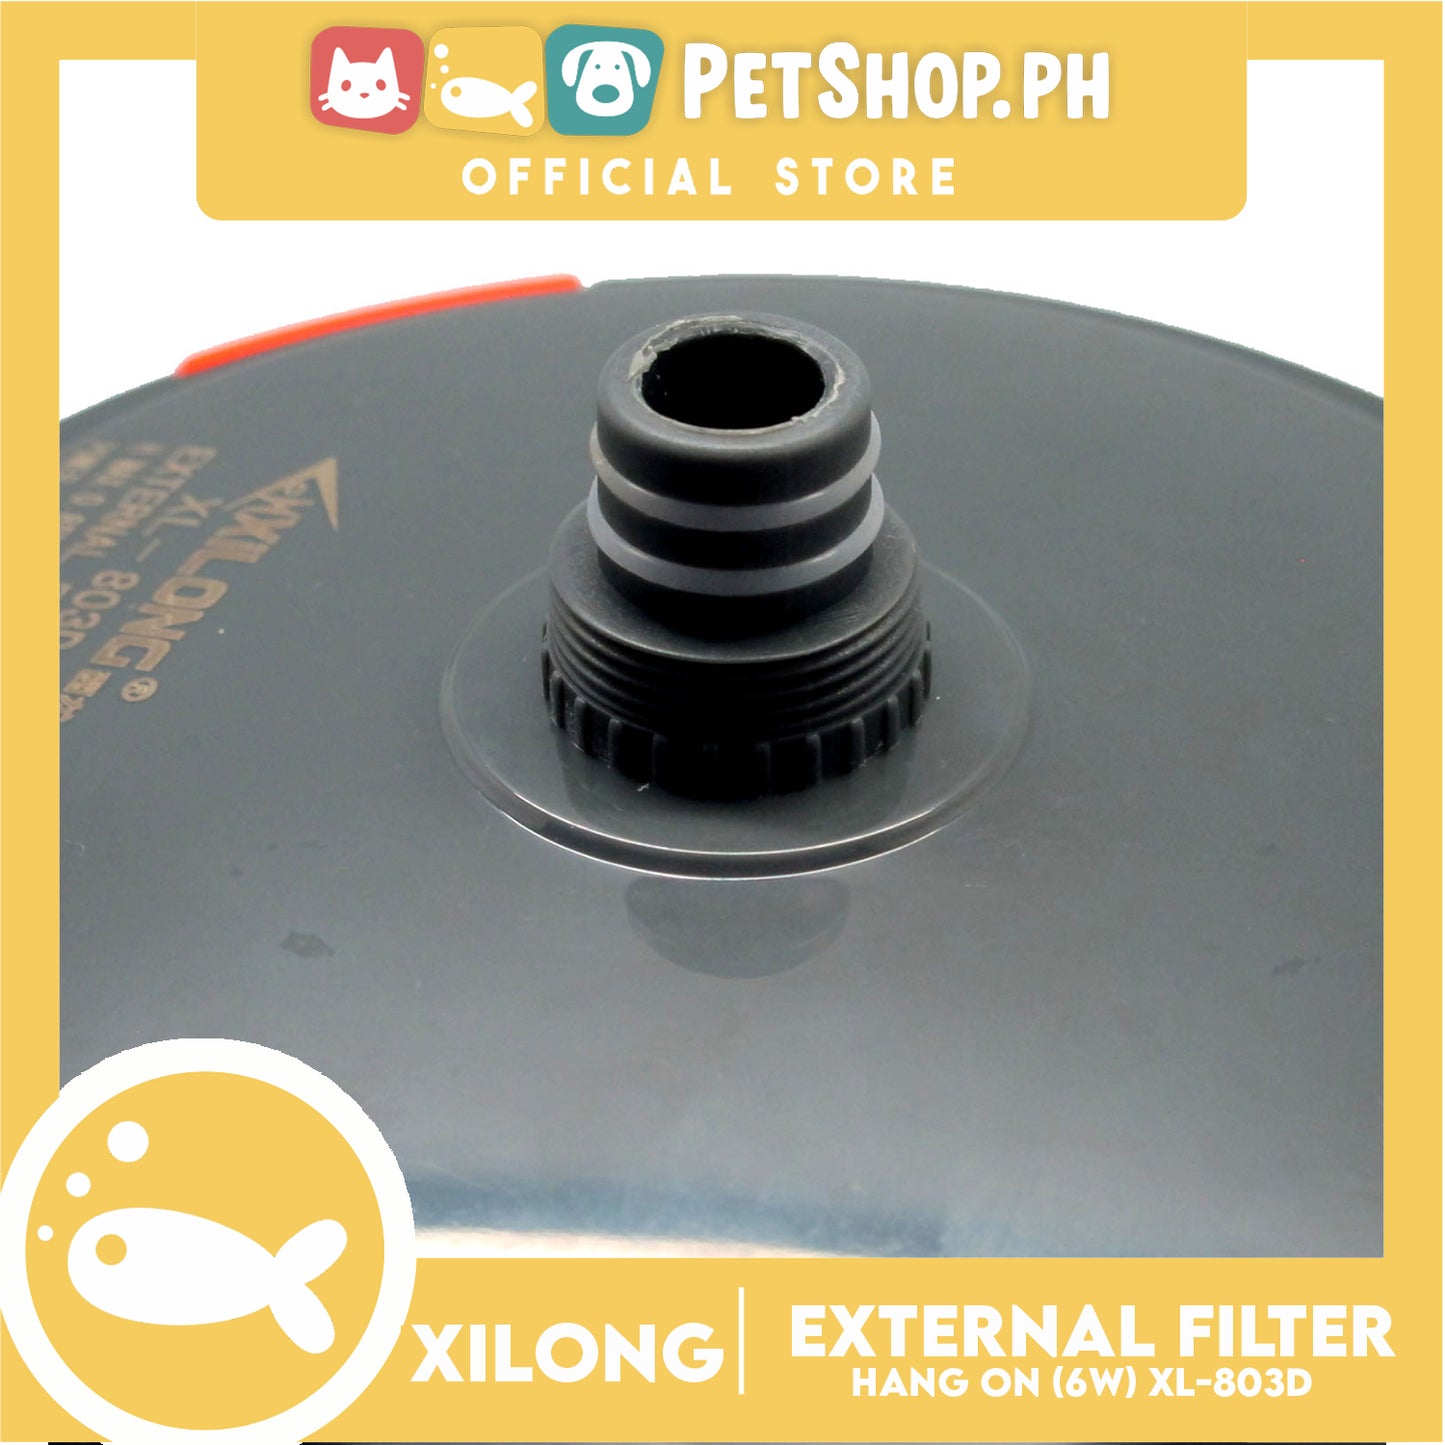 XL-803D Hang On External Filter